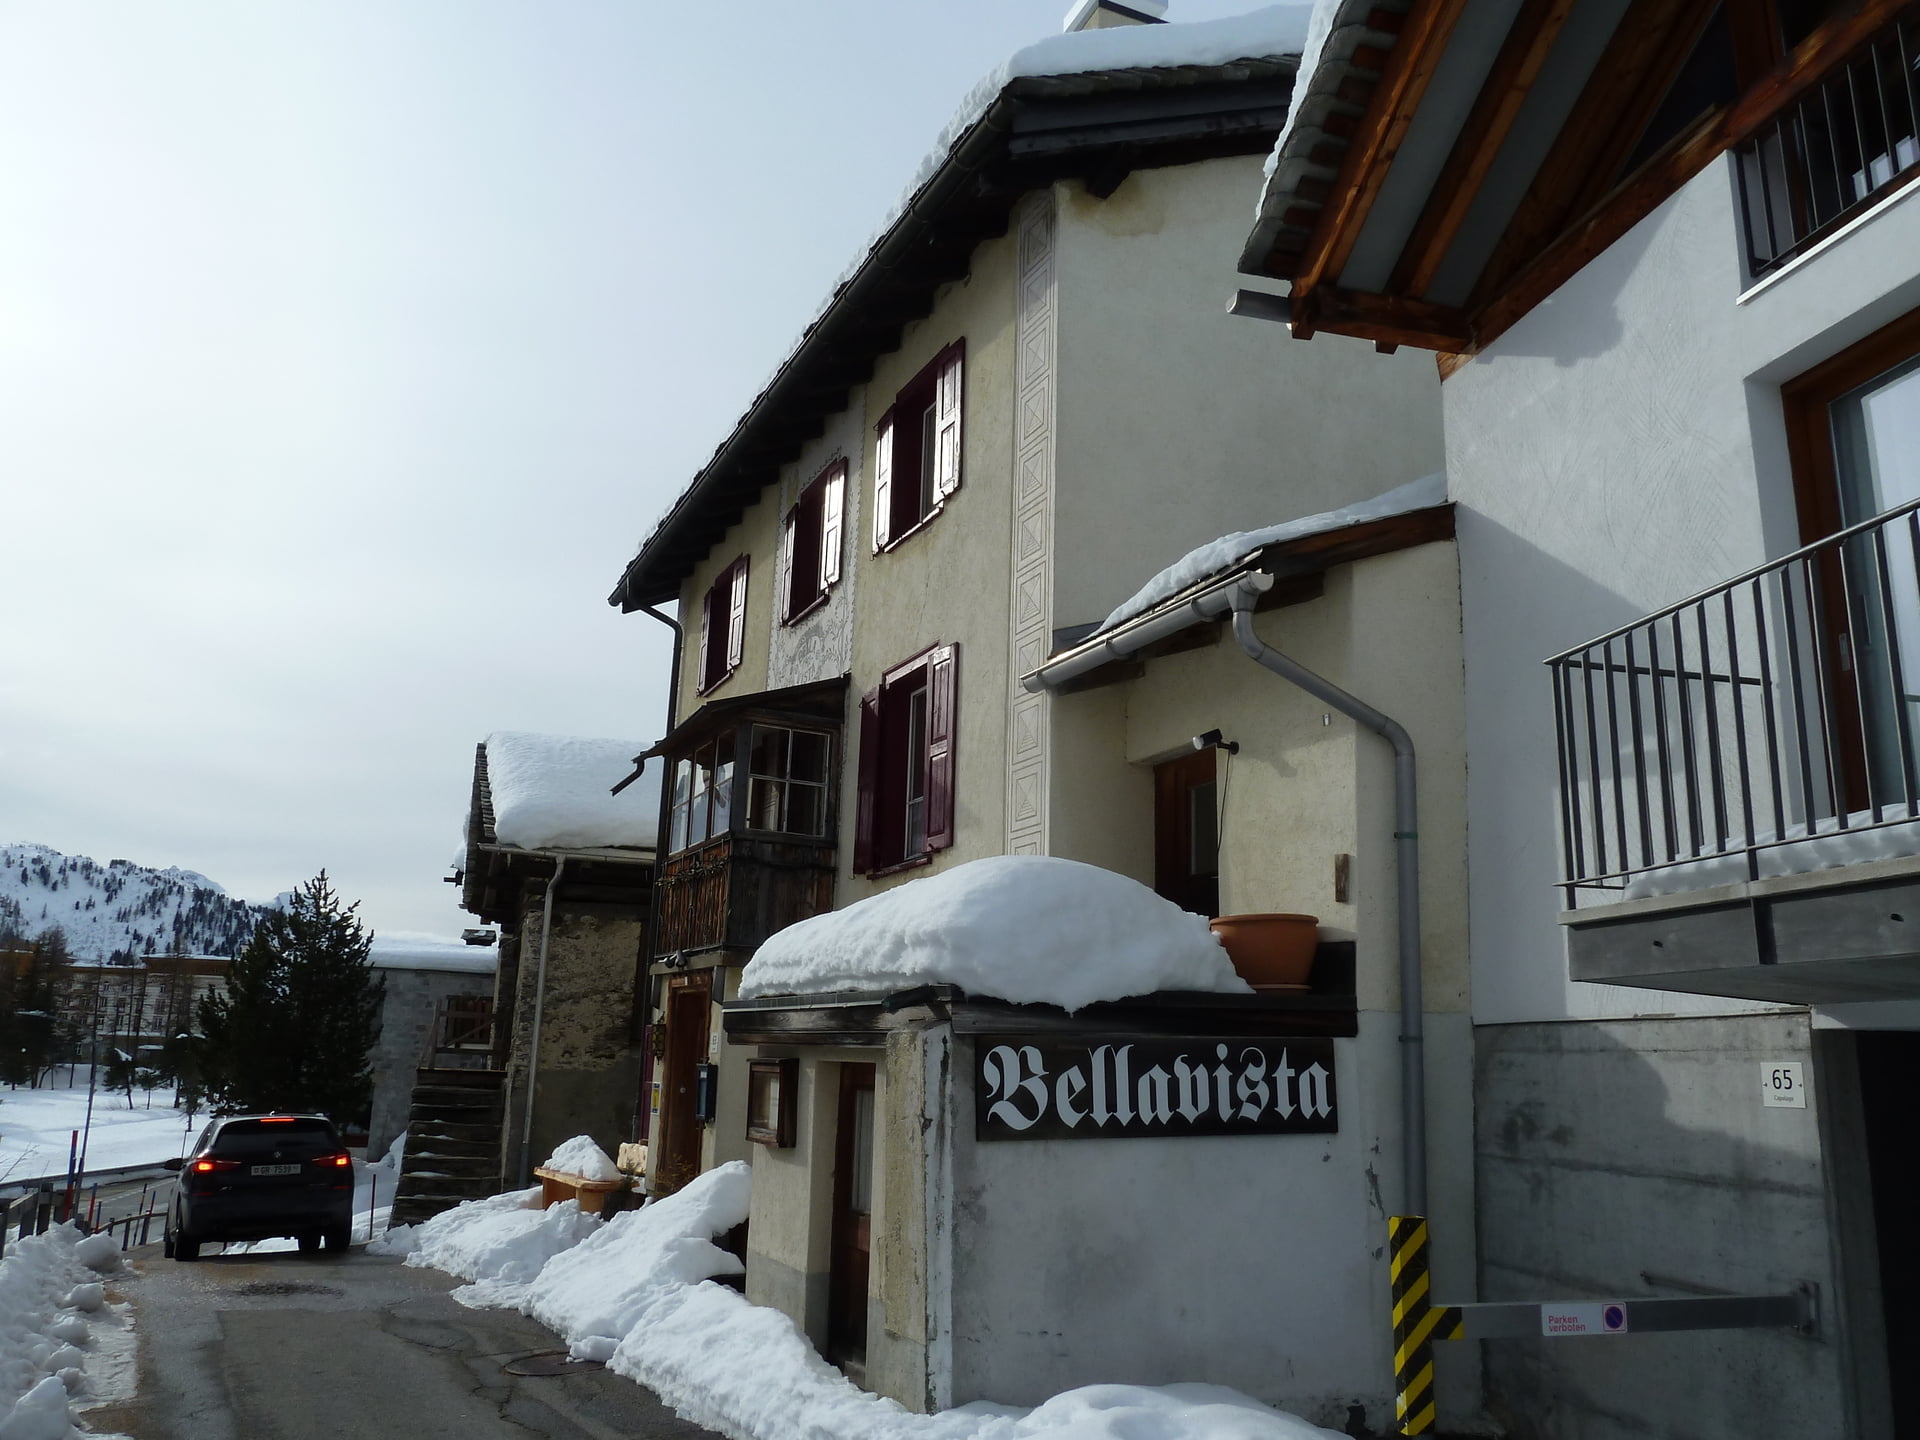 Restaurant Bellavista | Kulinarische Highlights in St. Moritz